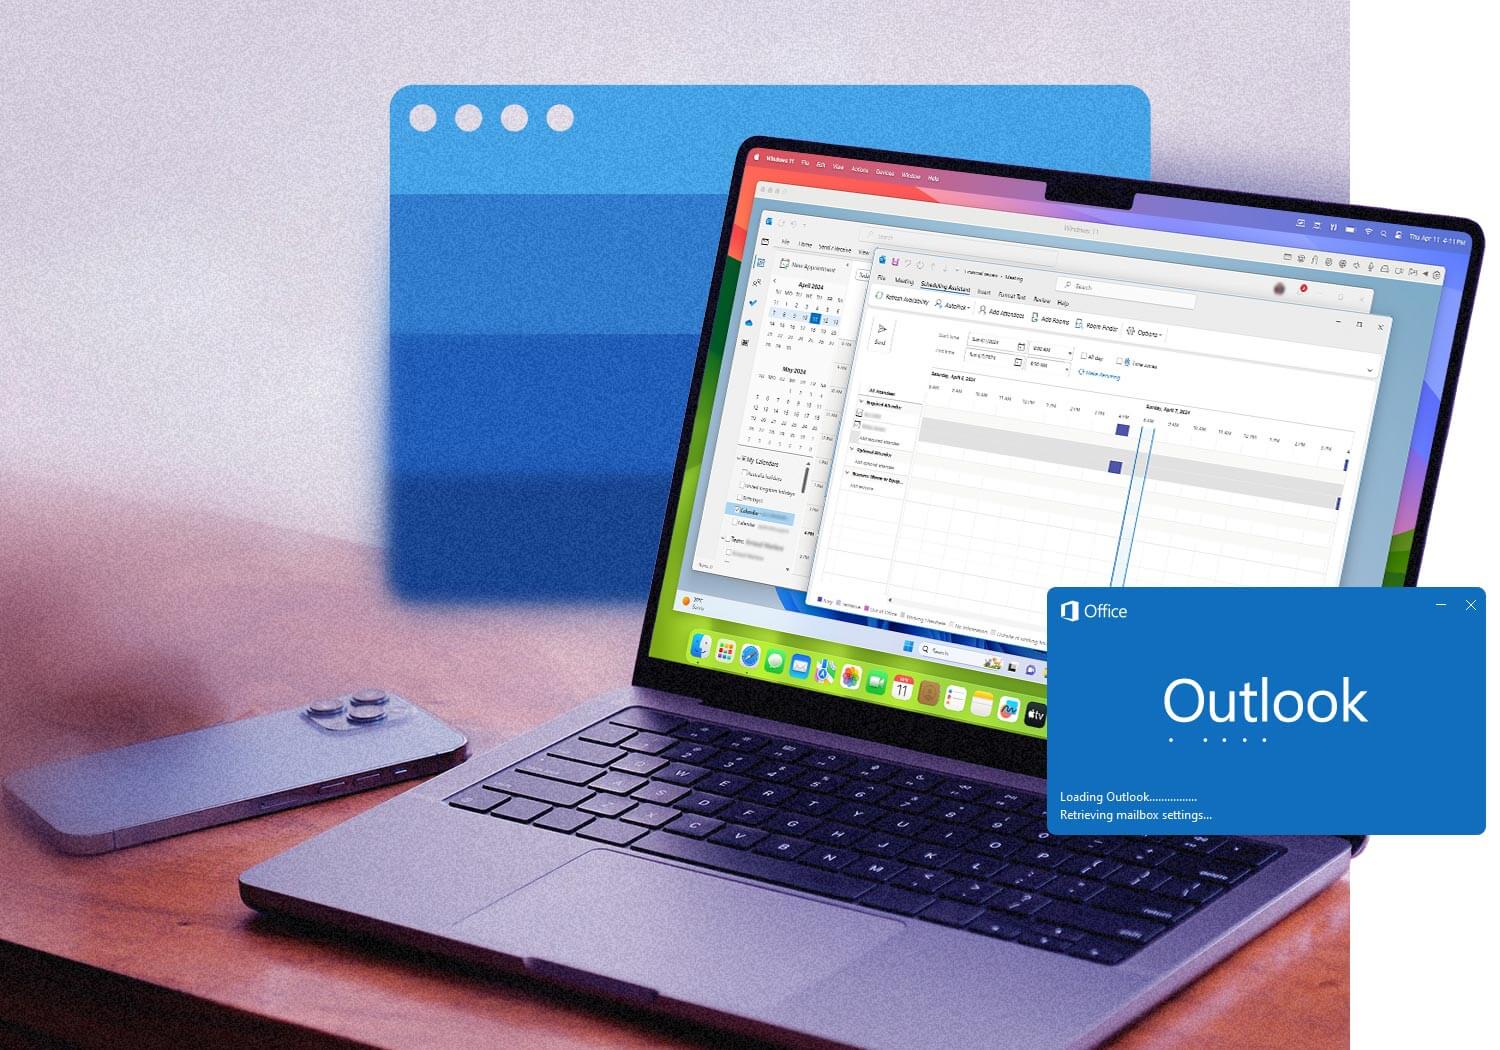 Run Windows Outlook on Mac